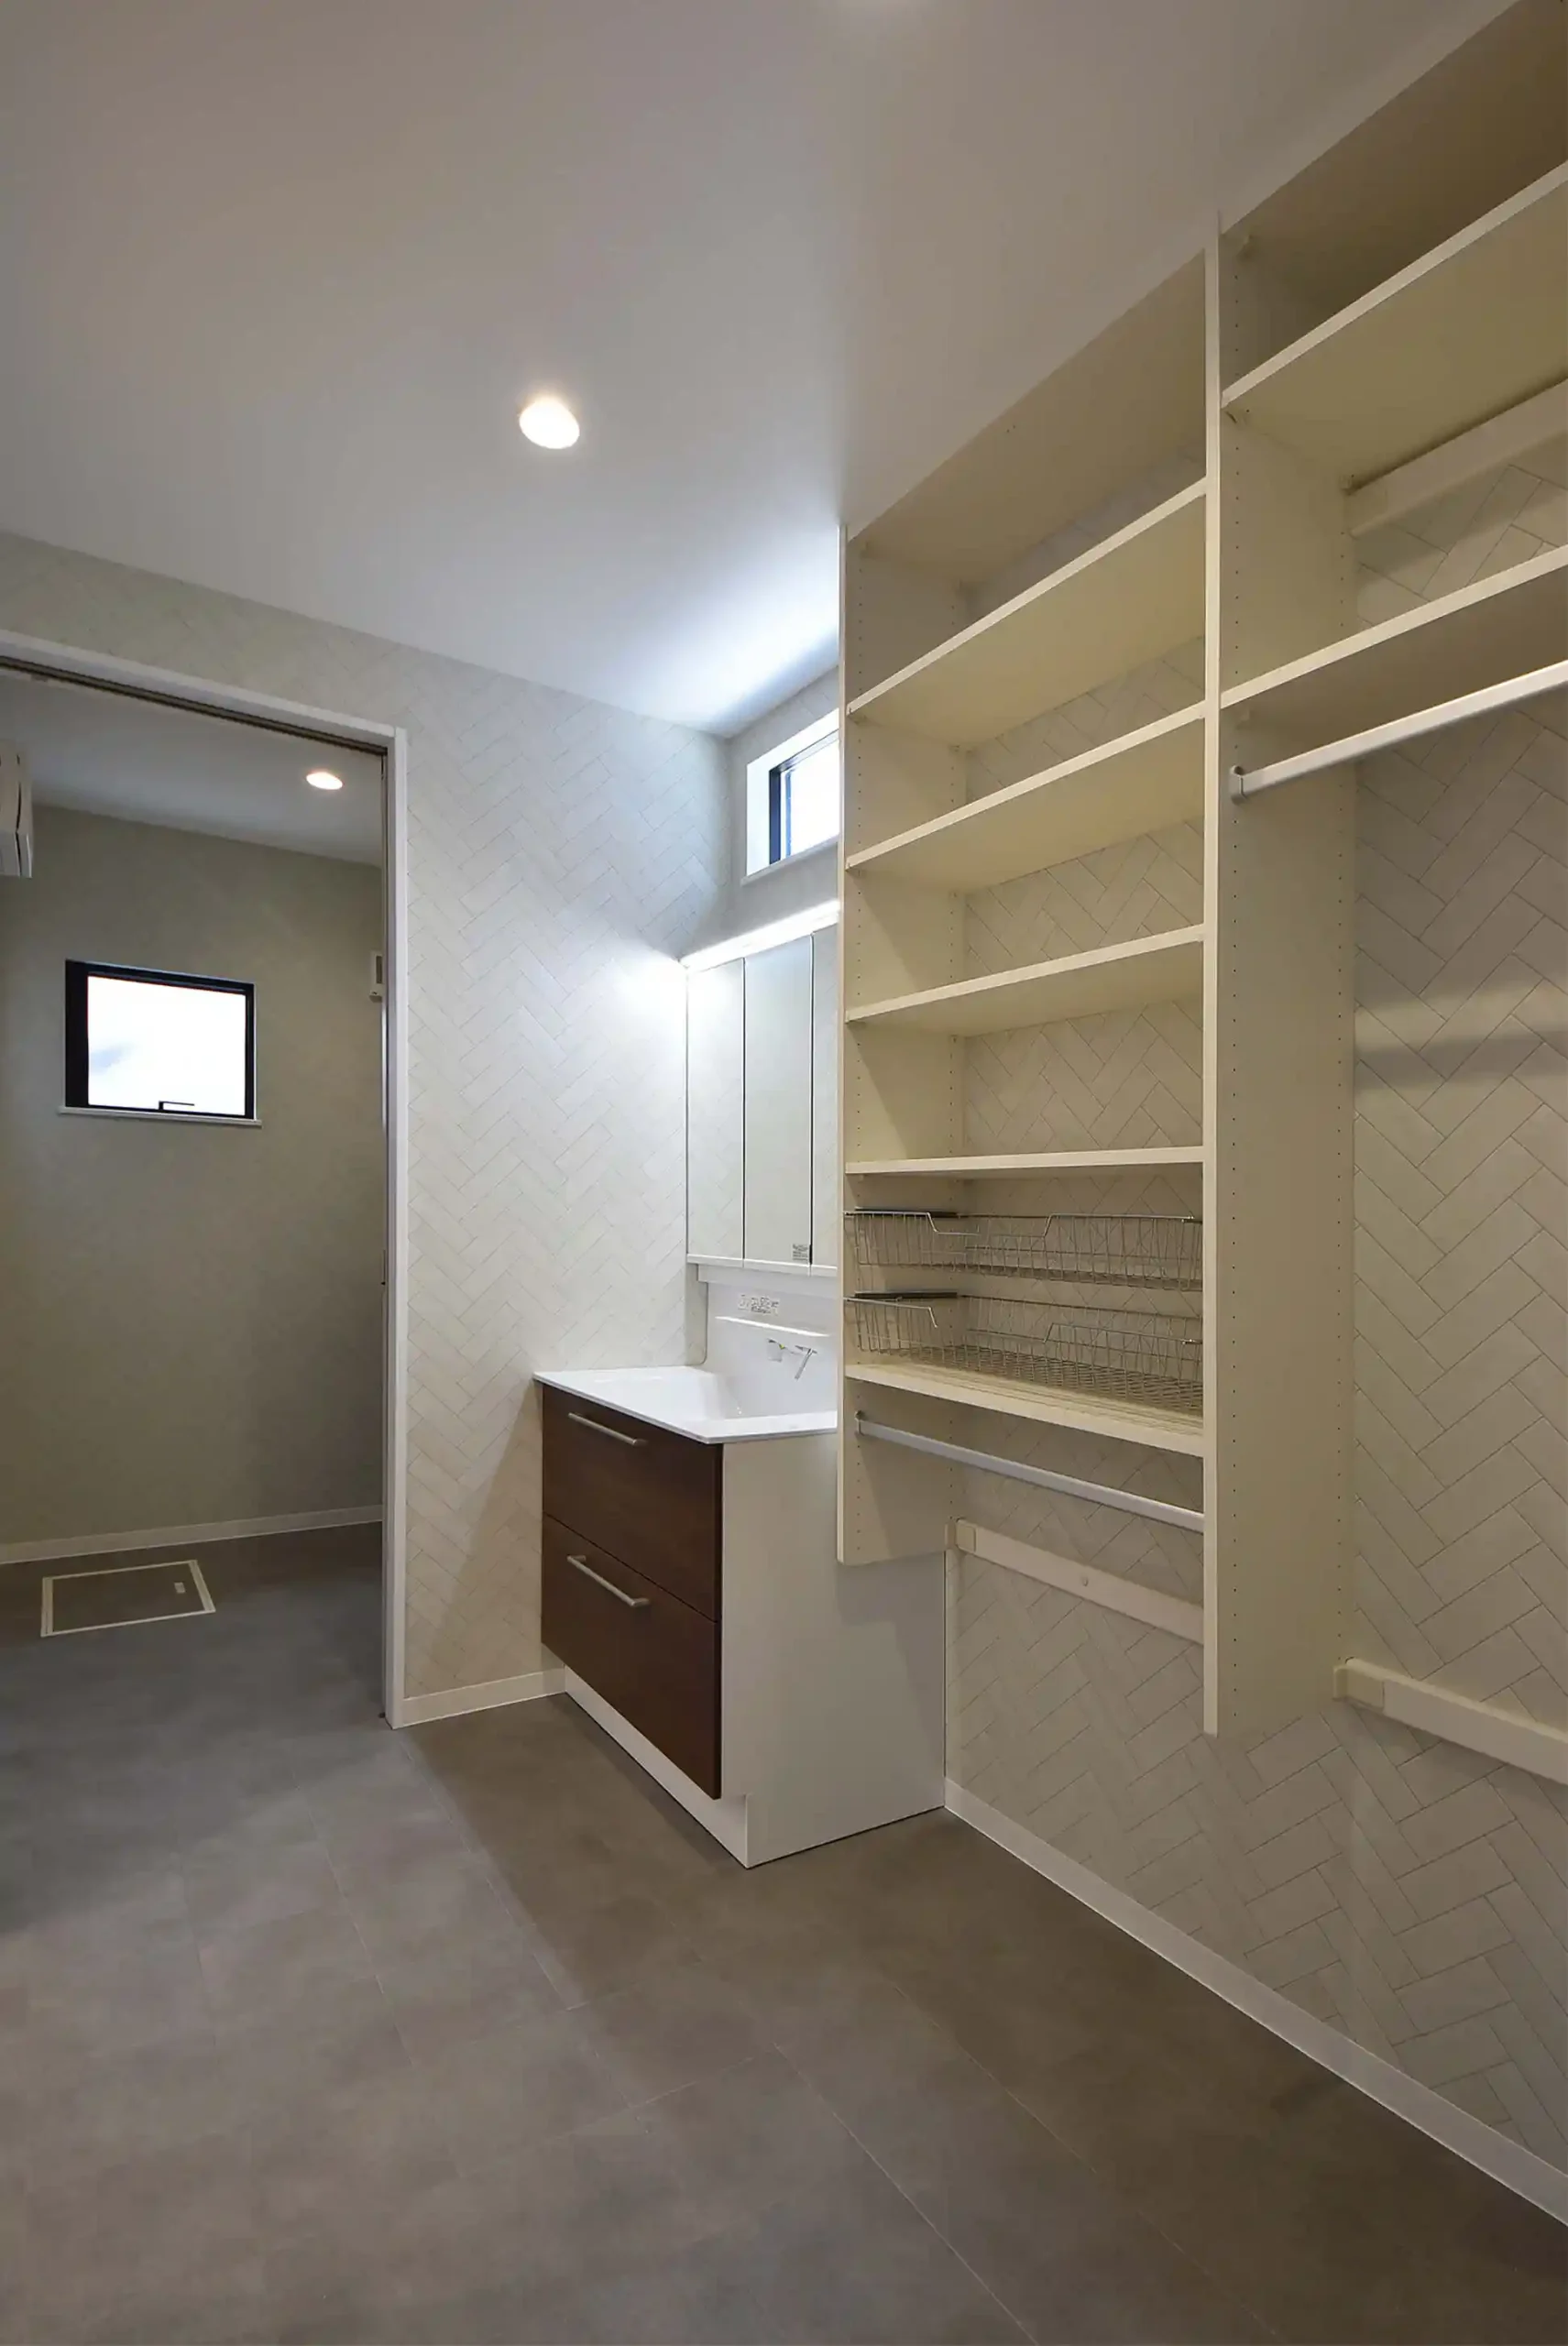 広めの洗面室に少ないスペースで多くの収納が可能なランドリールーム